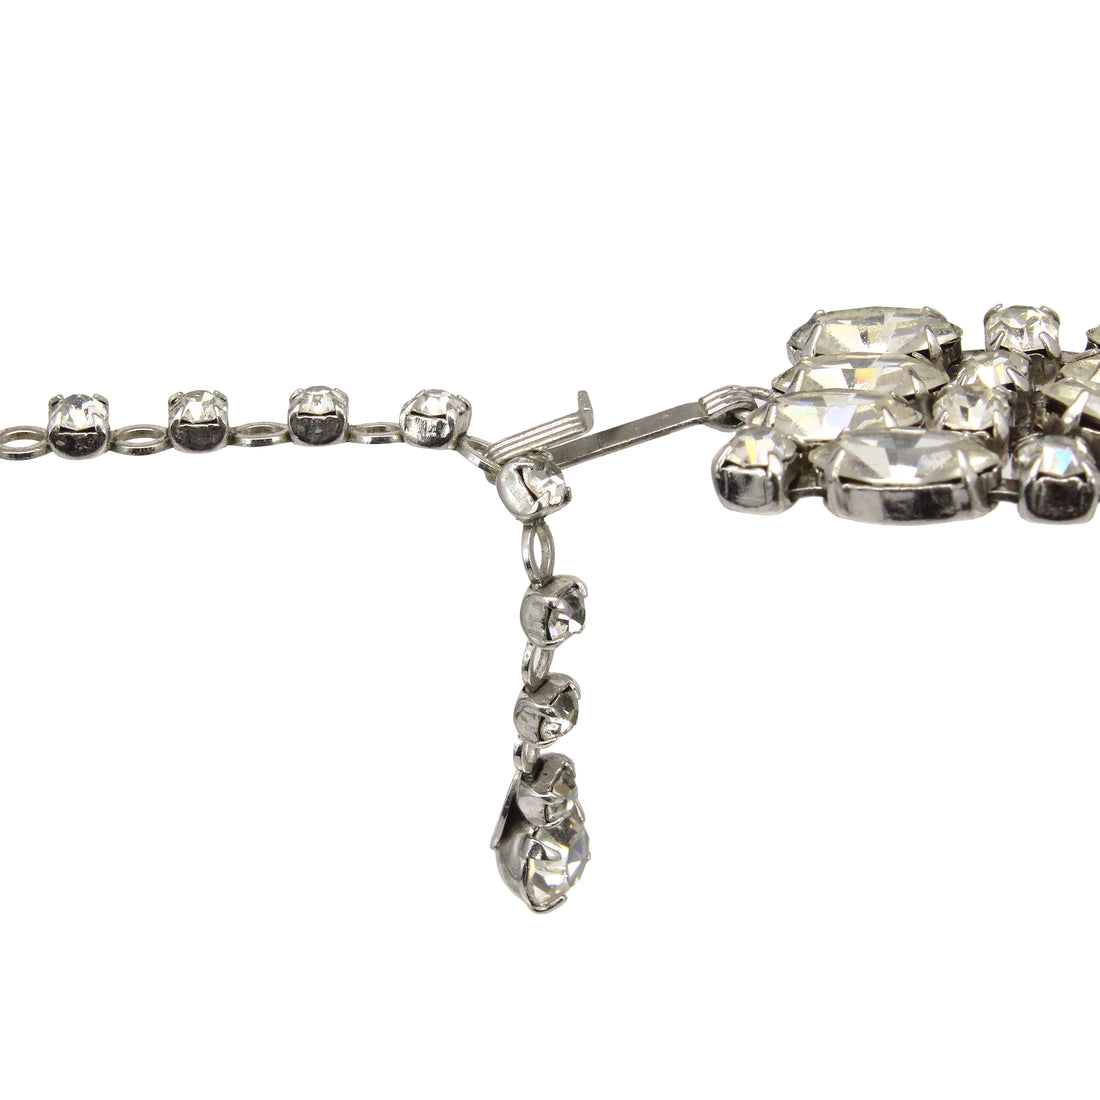 SHERMAN Clear Rhinestone 4-Row Necklace & Drop Earrings Set